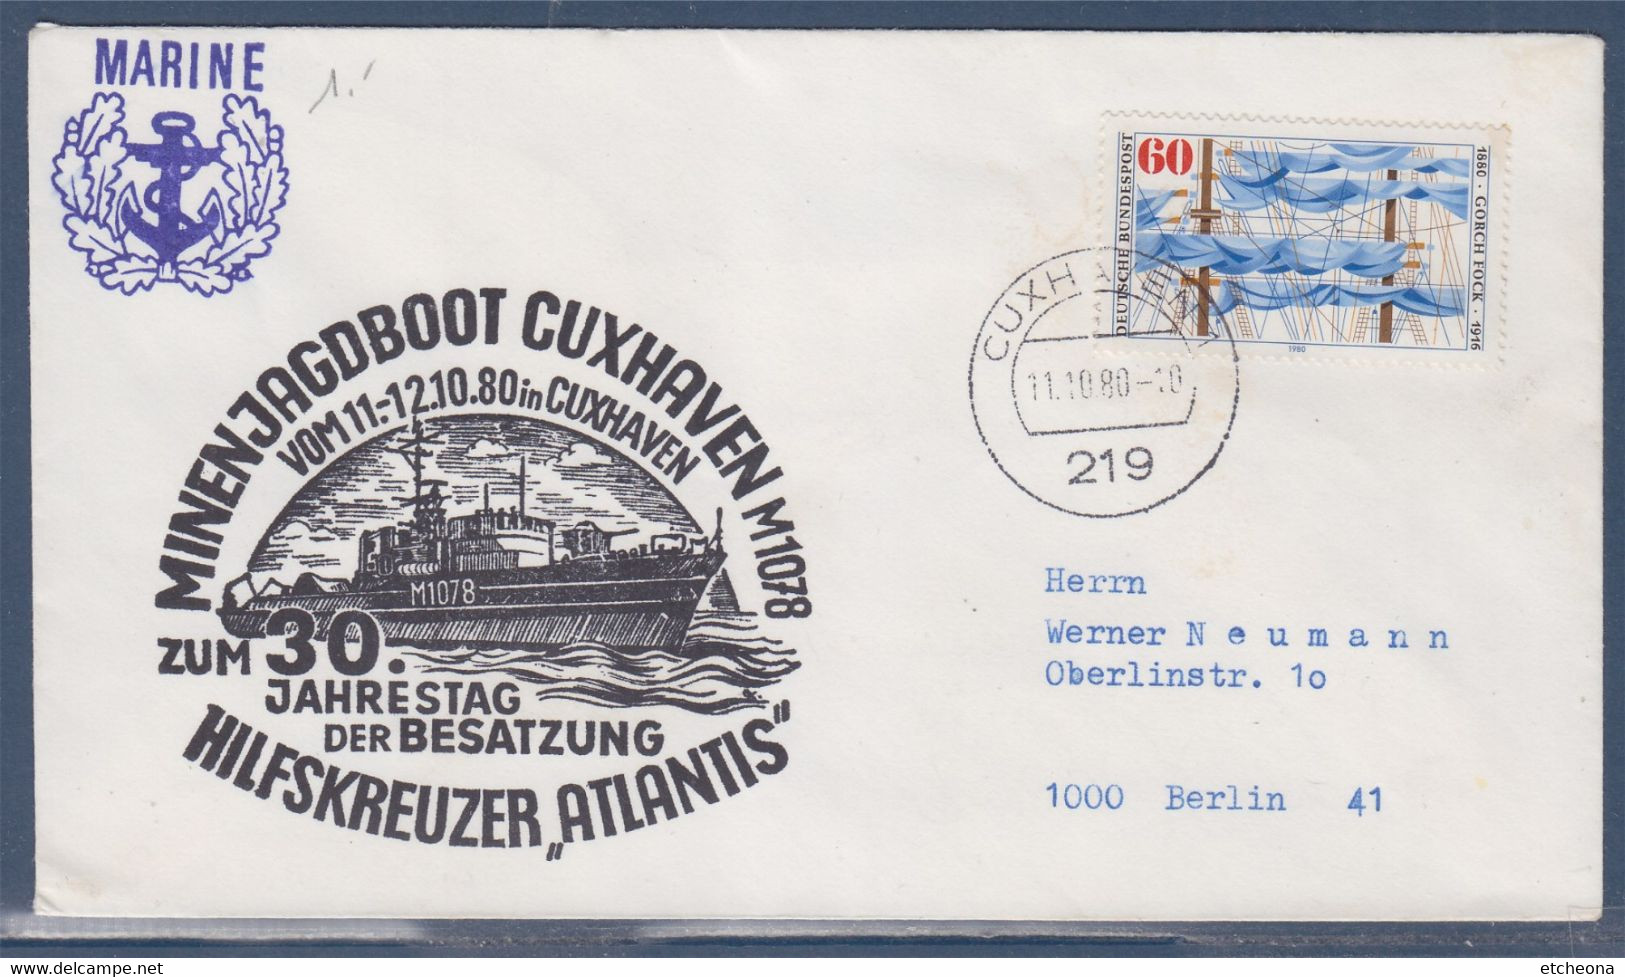 Marine, Chasseur De Mines Cuxhaven, Croiseur Auxiliaire Atlantis Enveloppe 11.10.80 , 1 Timbre, Allemagne - Otros (Mar)